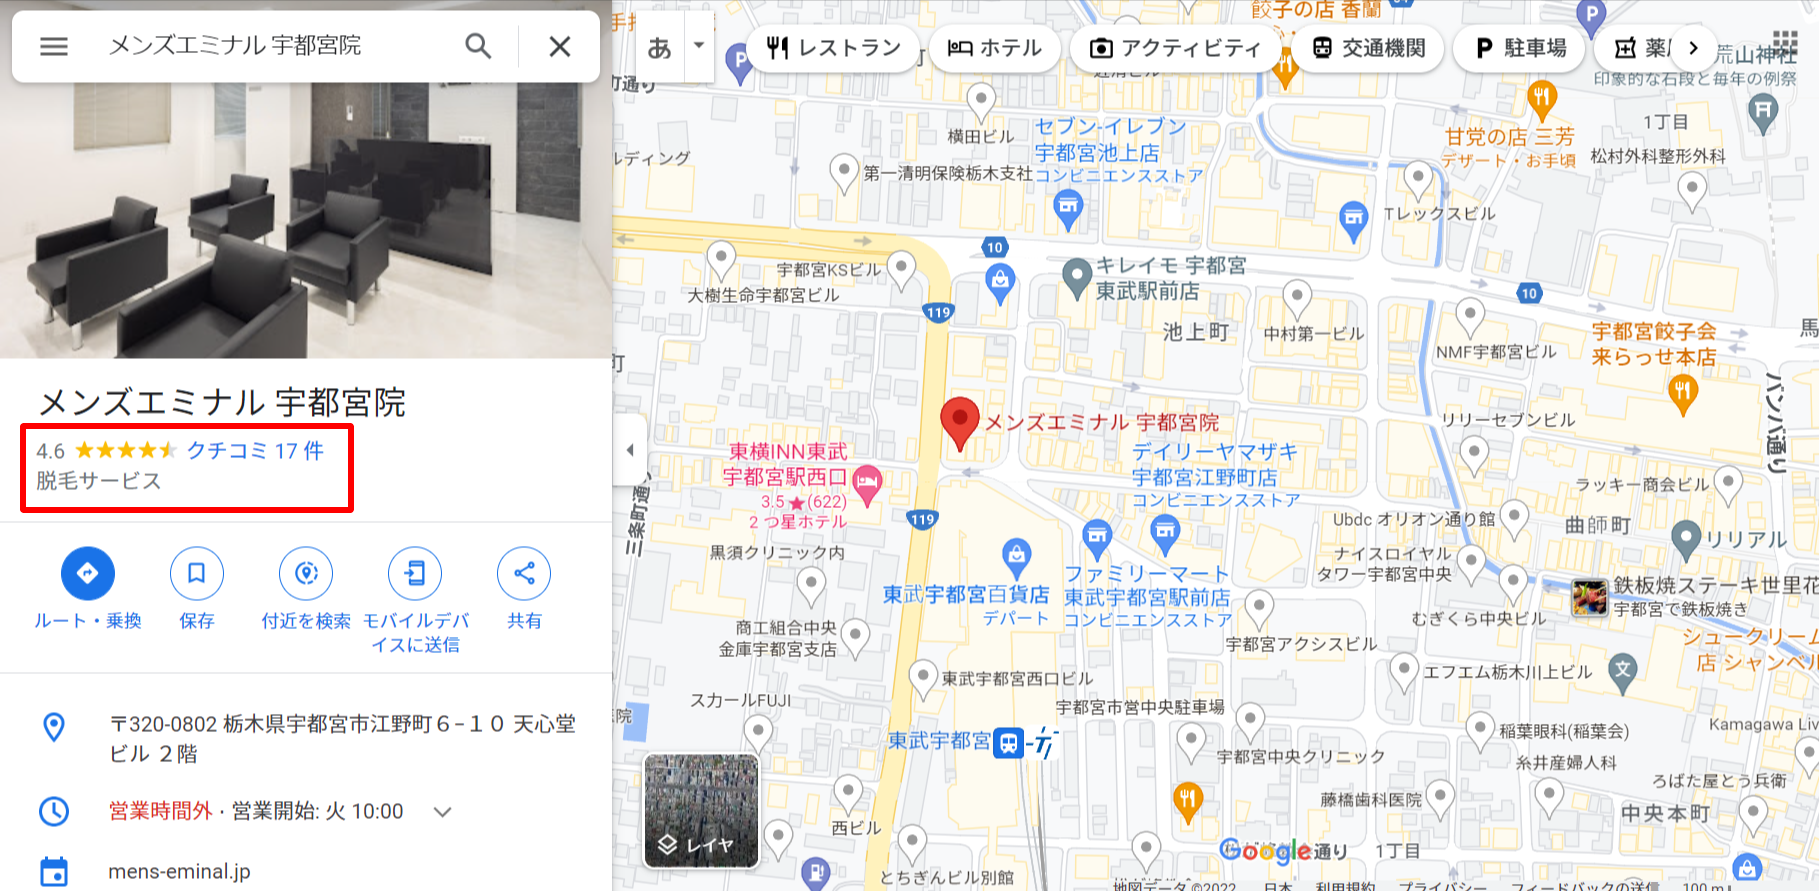 メンズエミナル-宇都宮院-Google-マップ